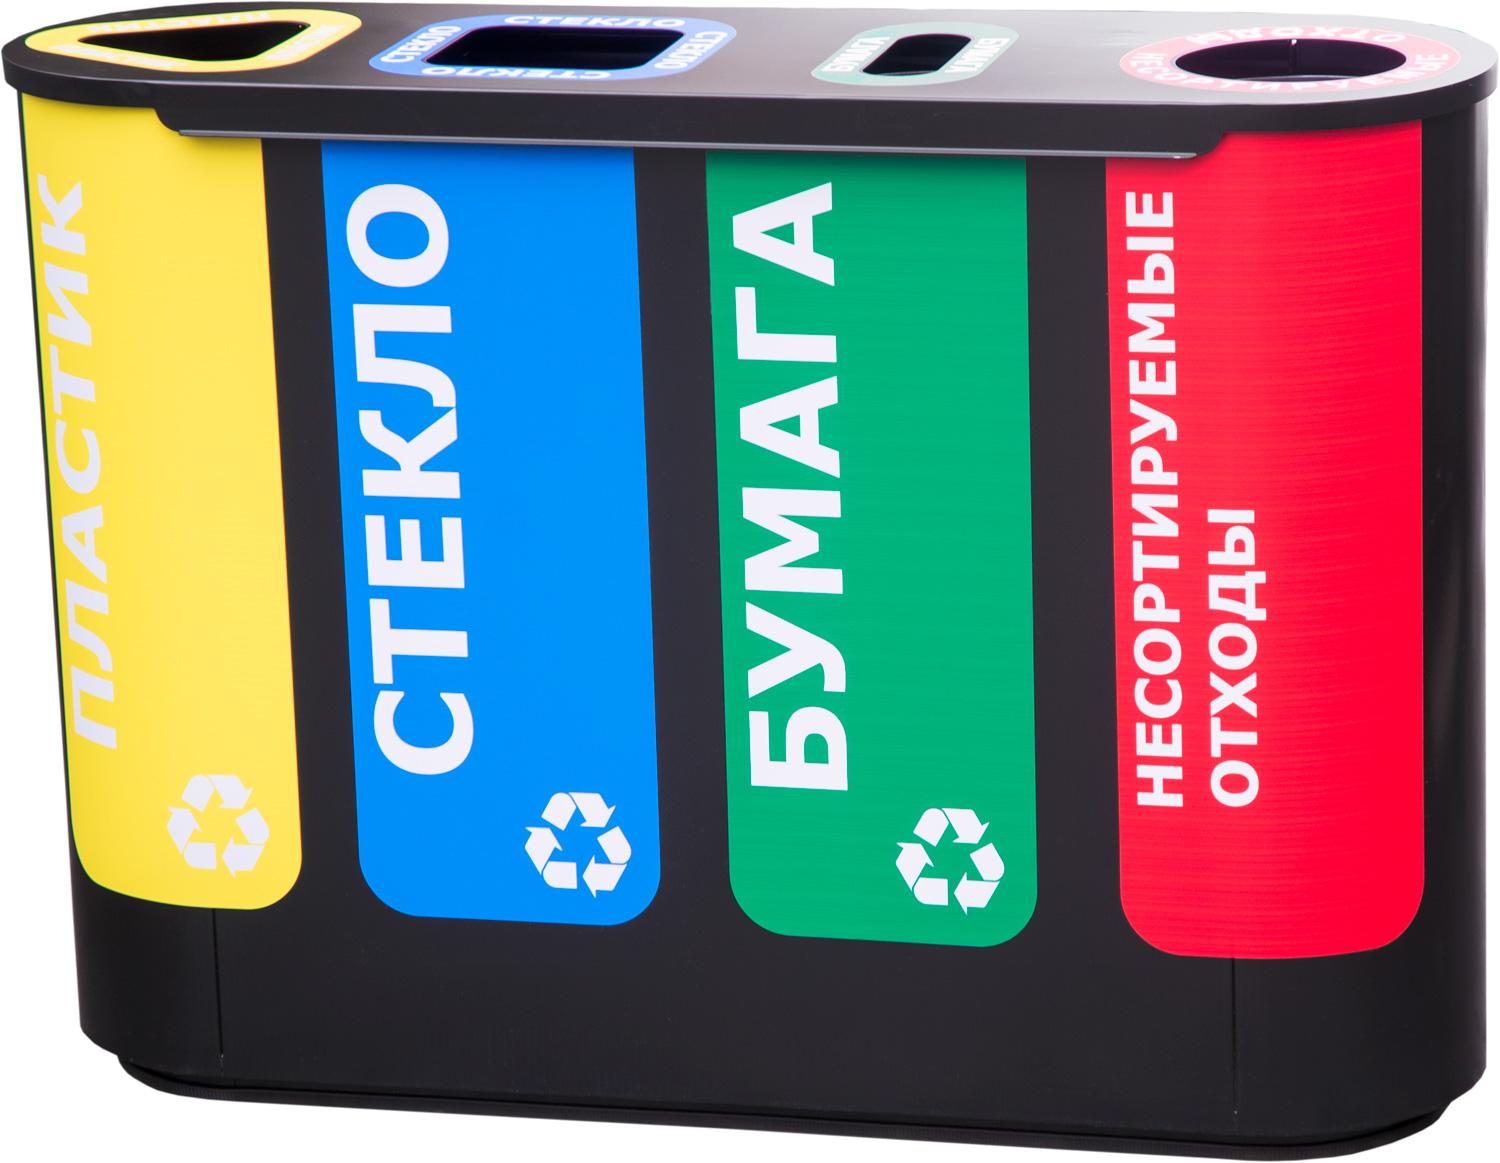 Урна для раздельного сбора мусора Акцент-4 с наклейками: пластик / стекло / бумага / несорт. отходы